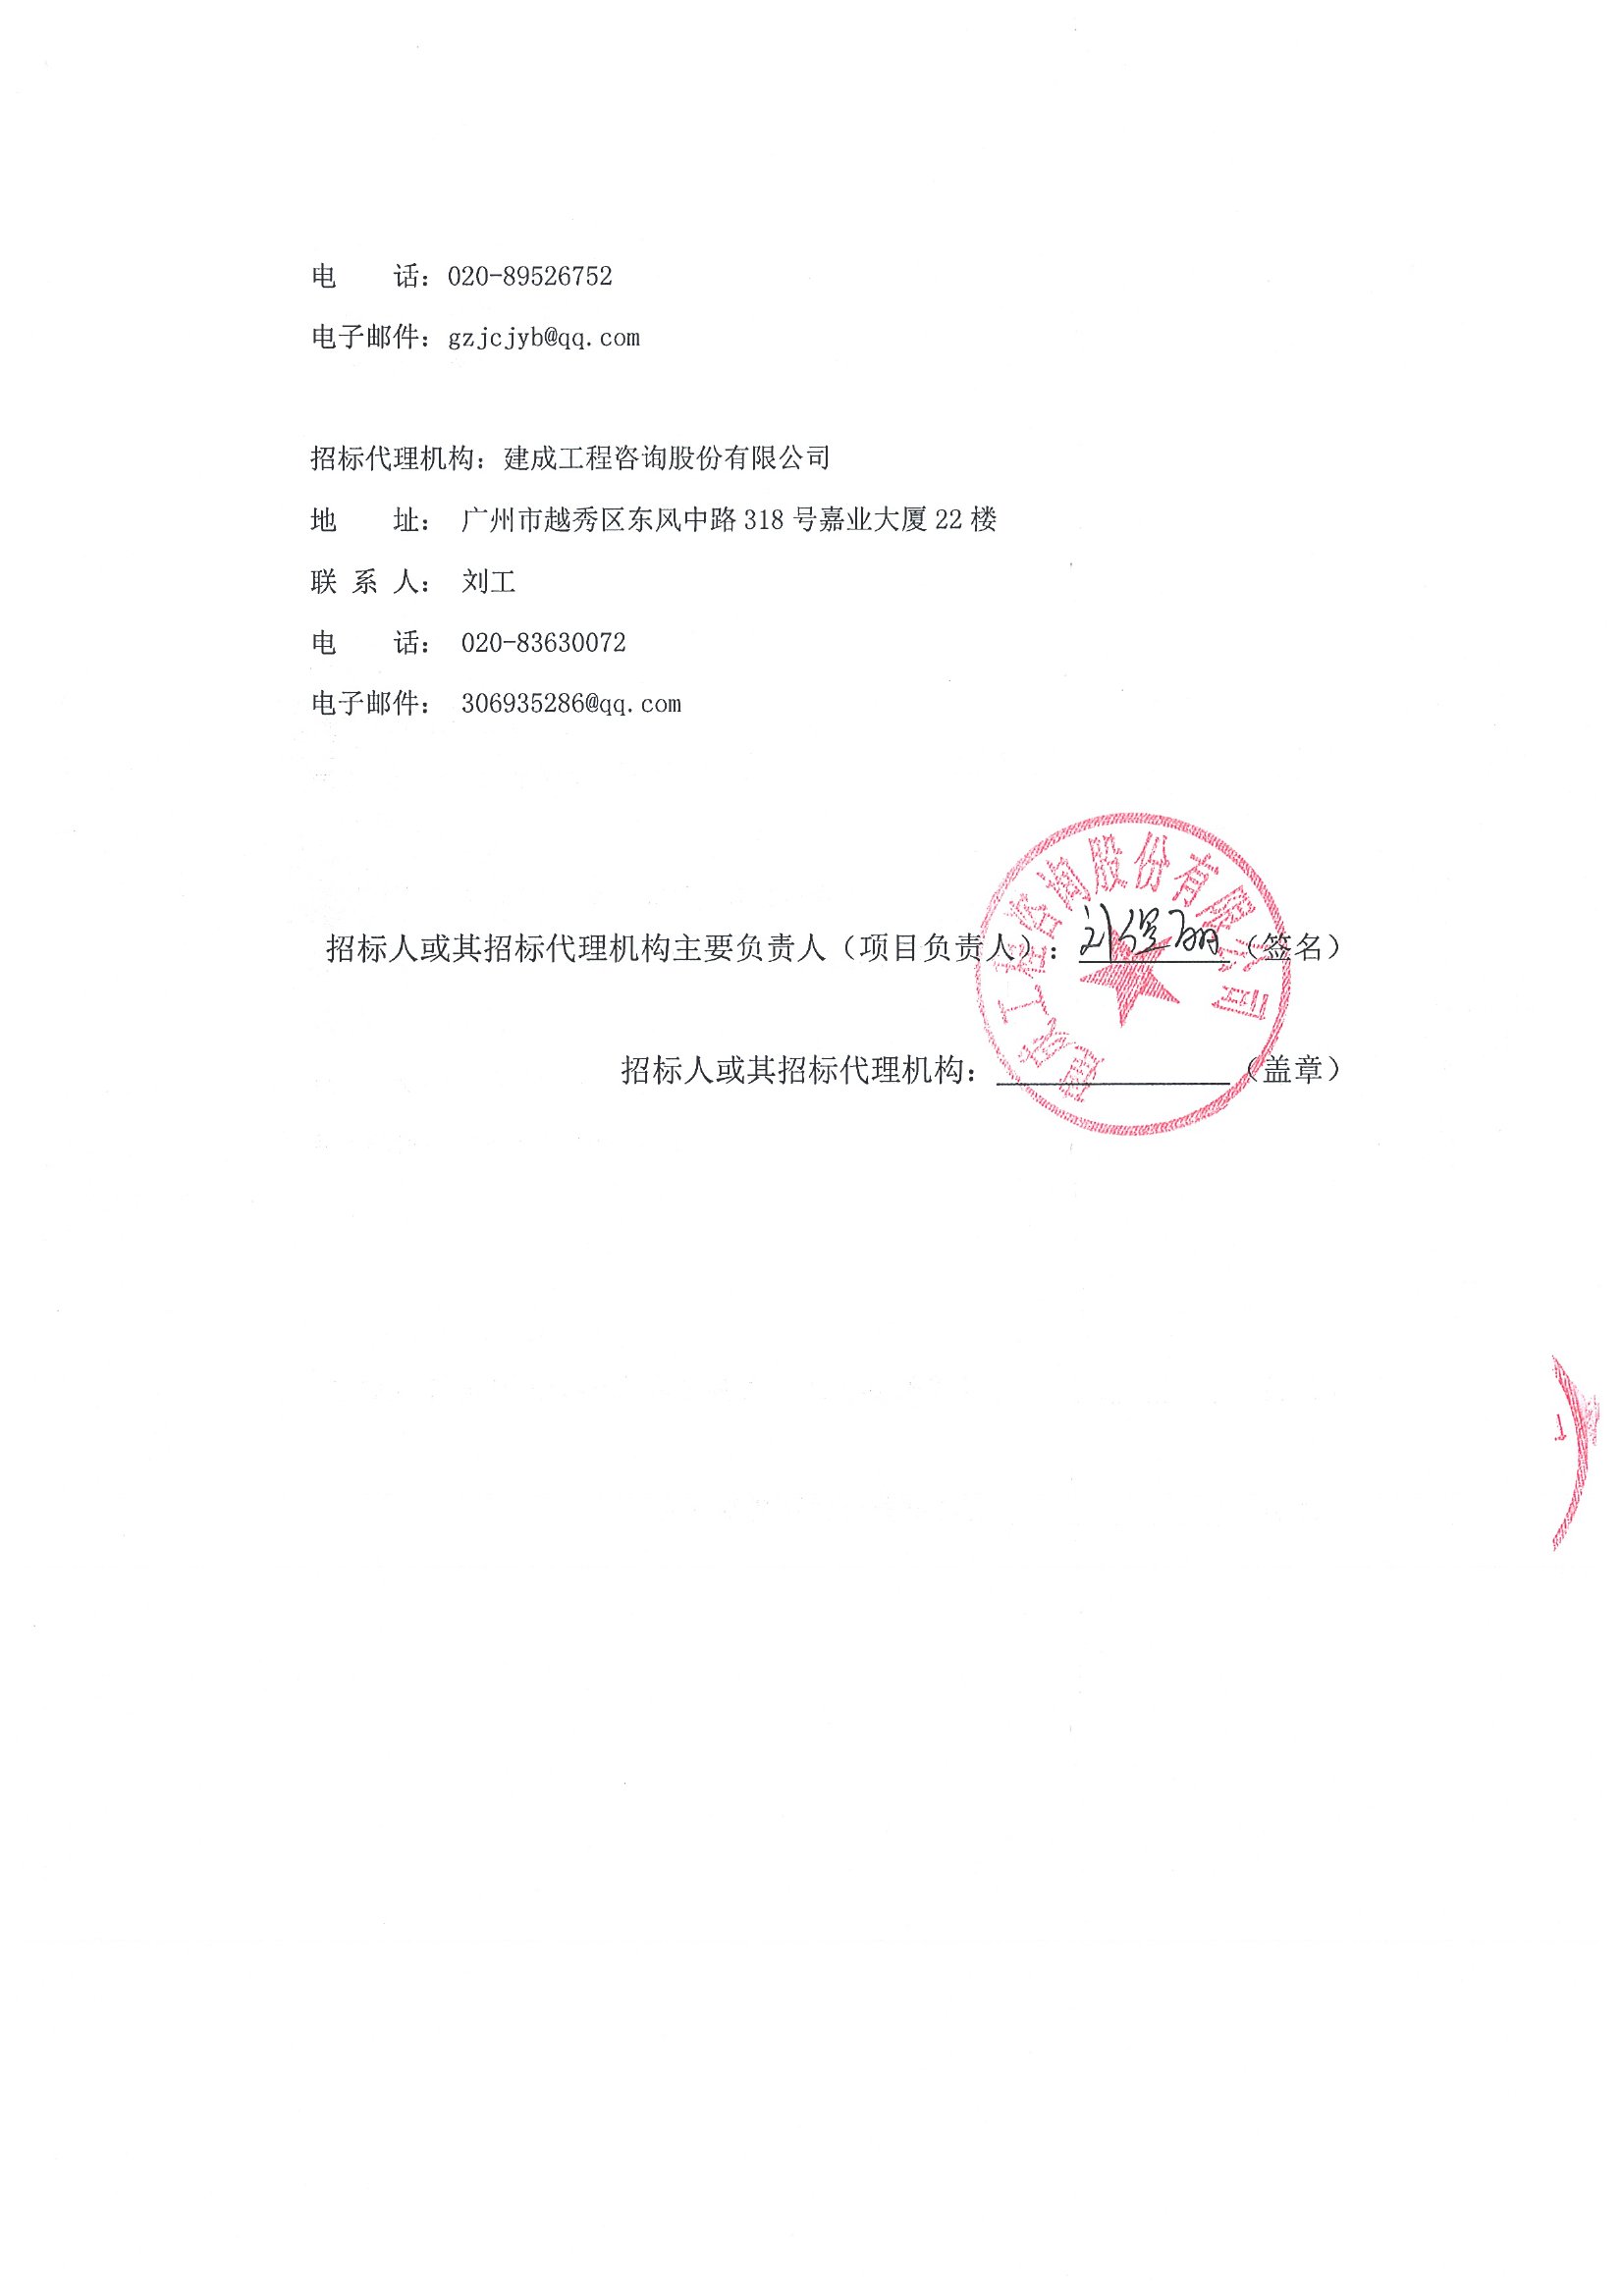 广州印钞有限公司2020年工作服清洗服务中标候选人公示